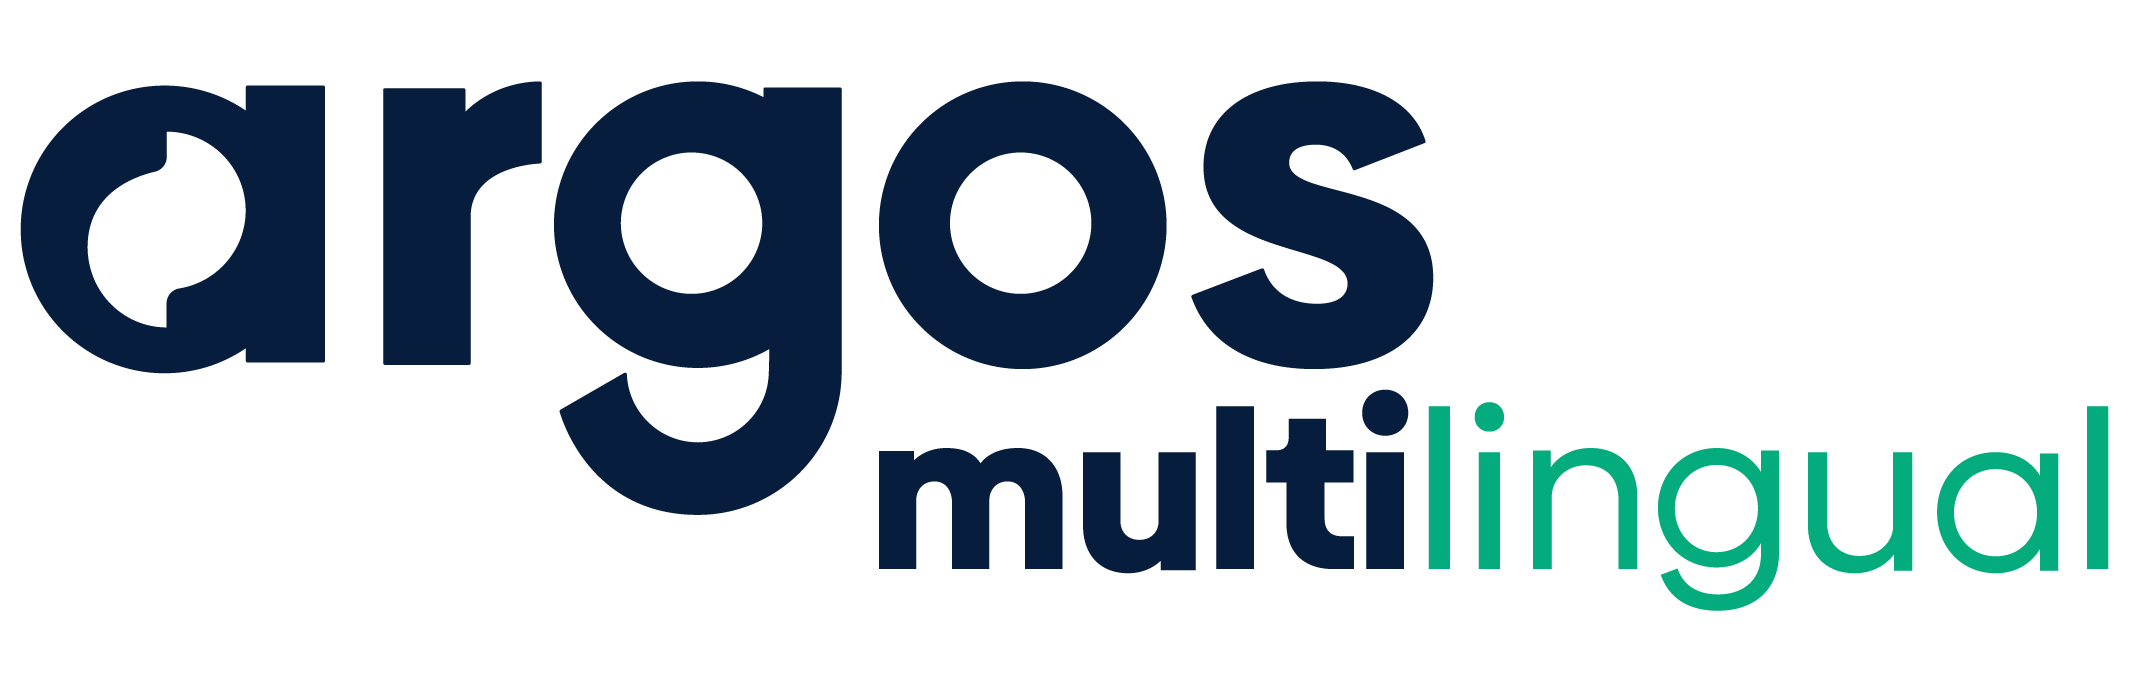 Argos Multilingual Logo